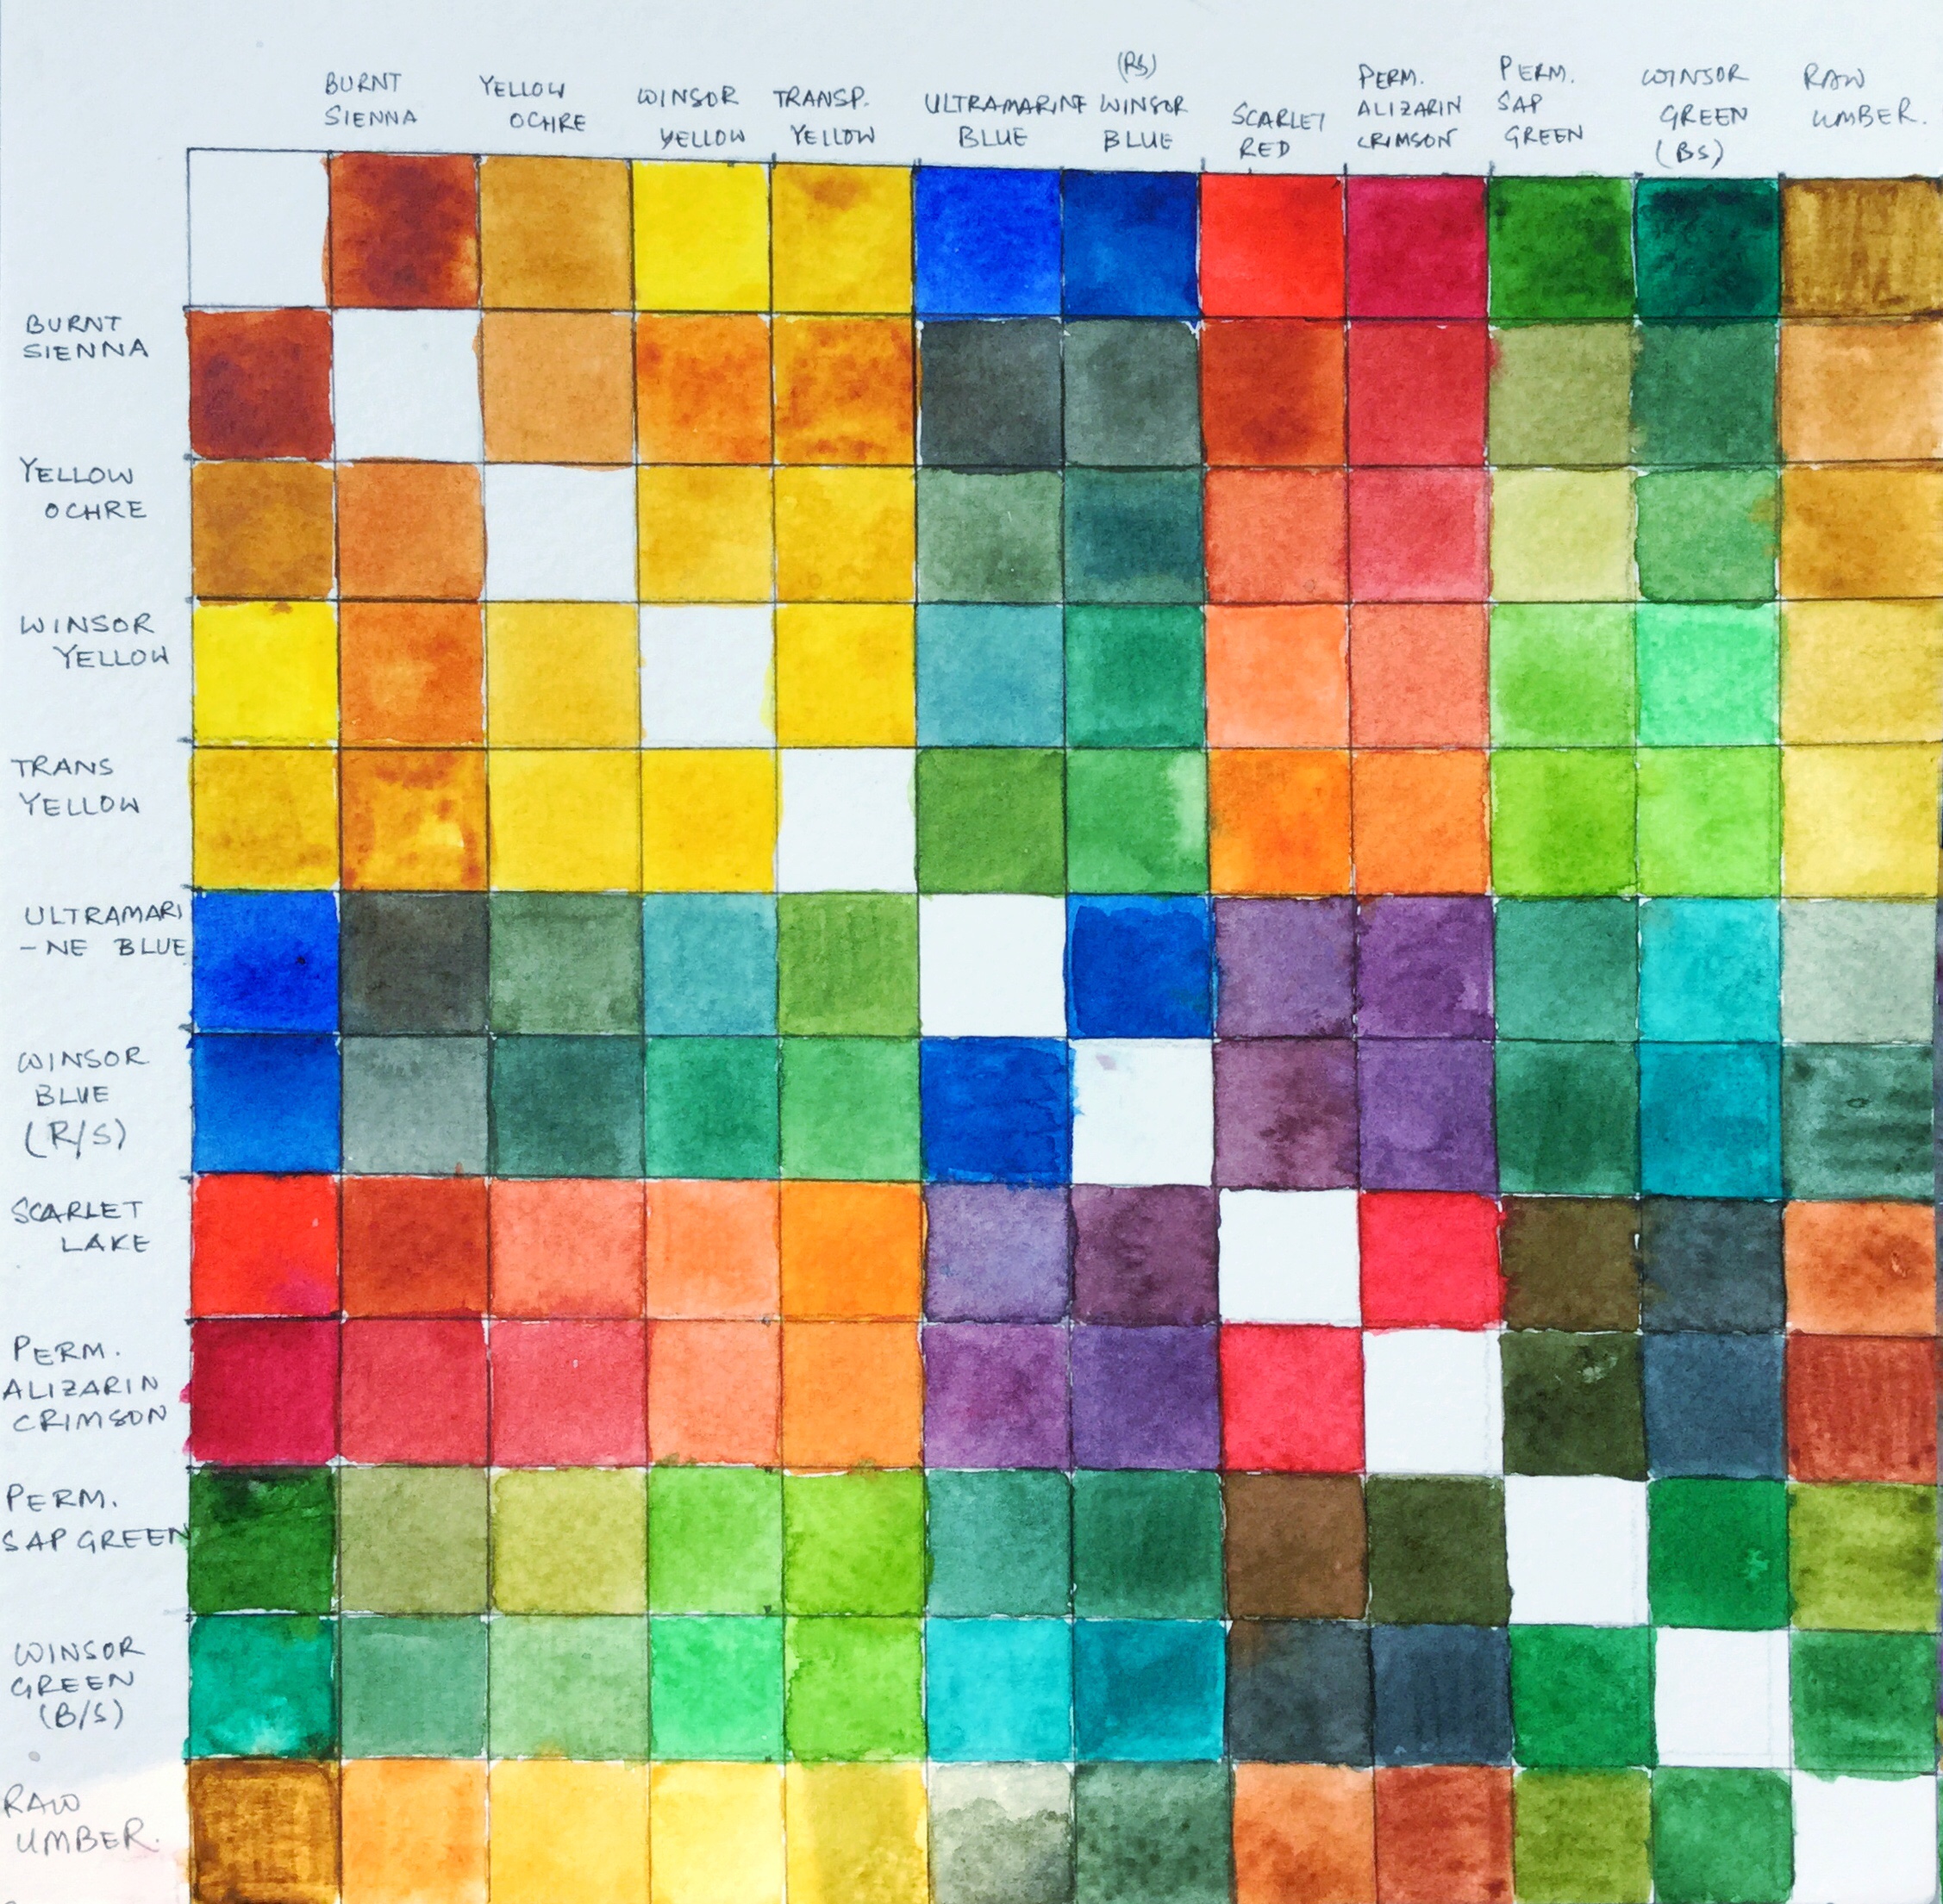 Watercolor Comparison Chart